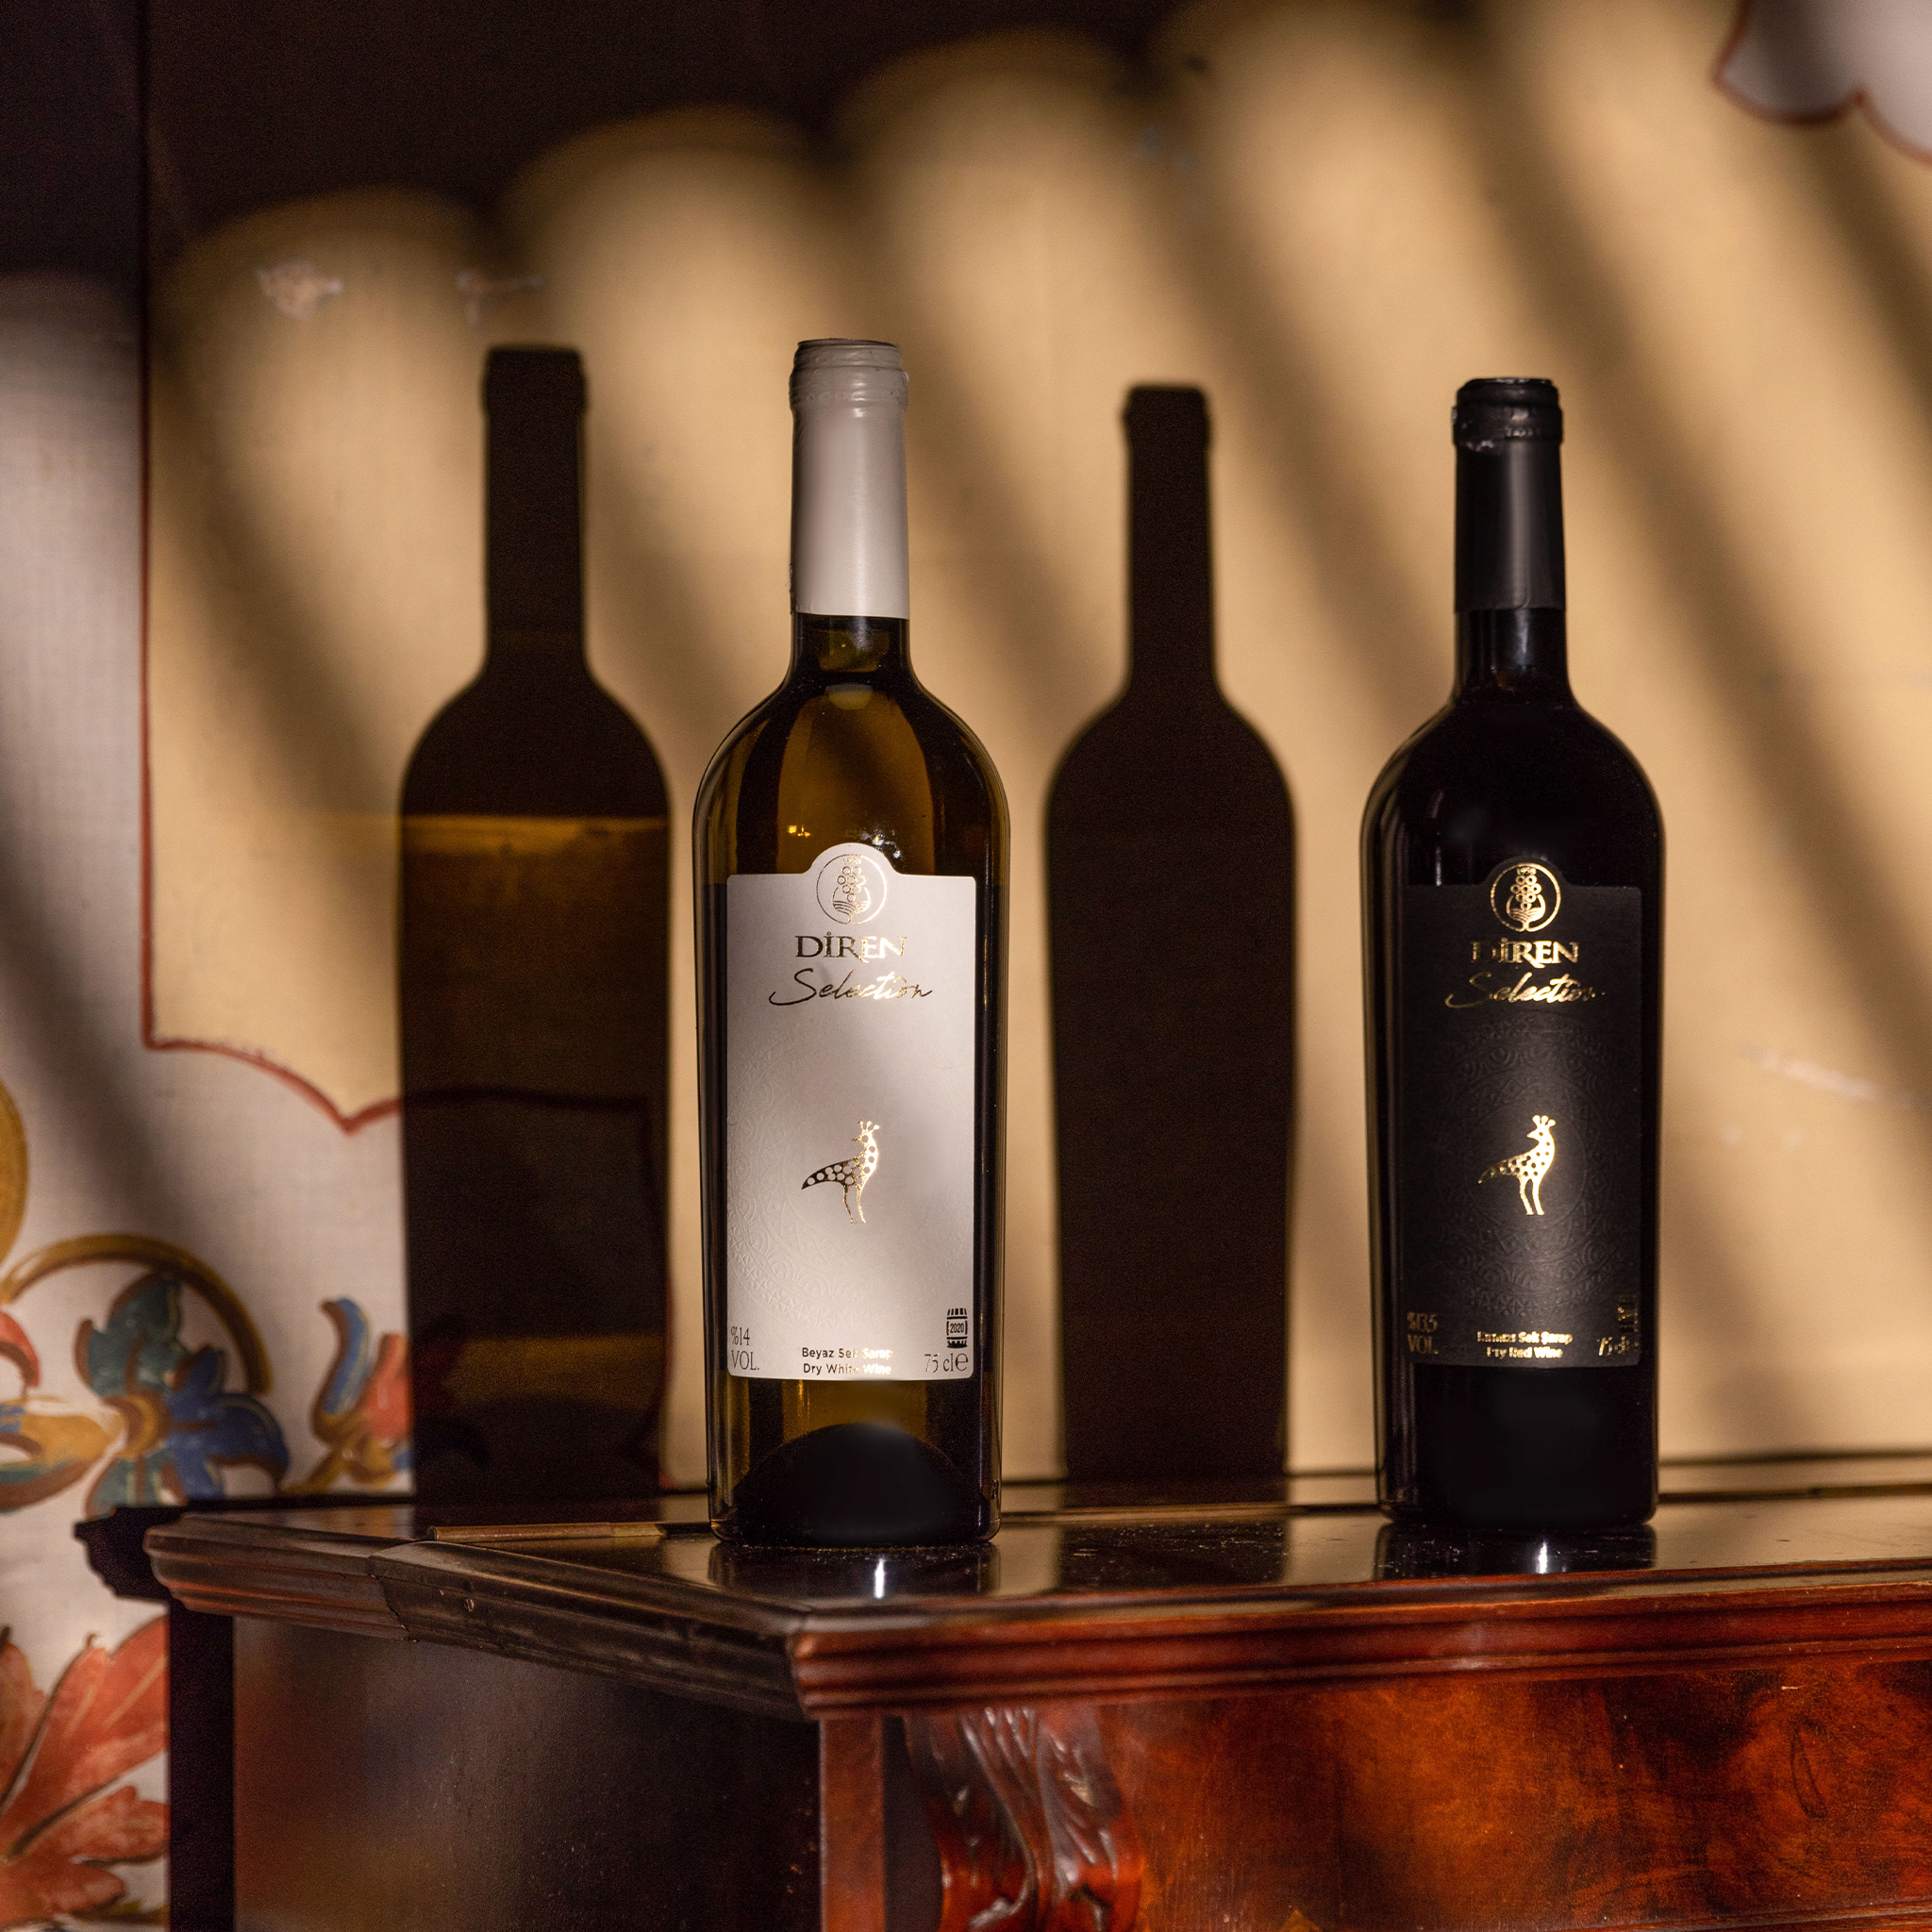 ディレン セレクション・レッド 750ml 辛口 トルコ 赤ワイン | Diren Selection Kirmizi Sek Sarap | Dry Red Wine